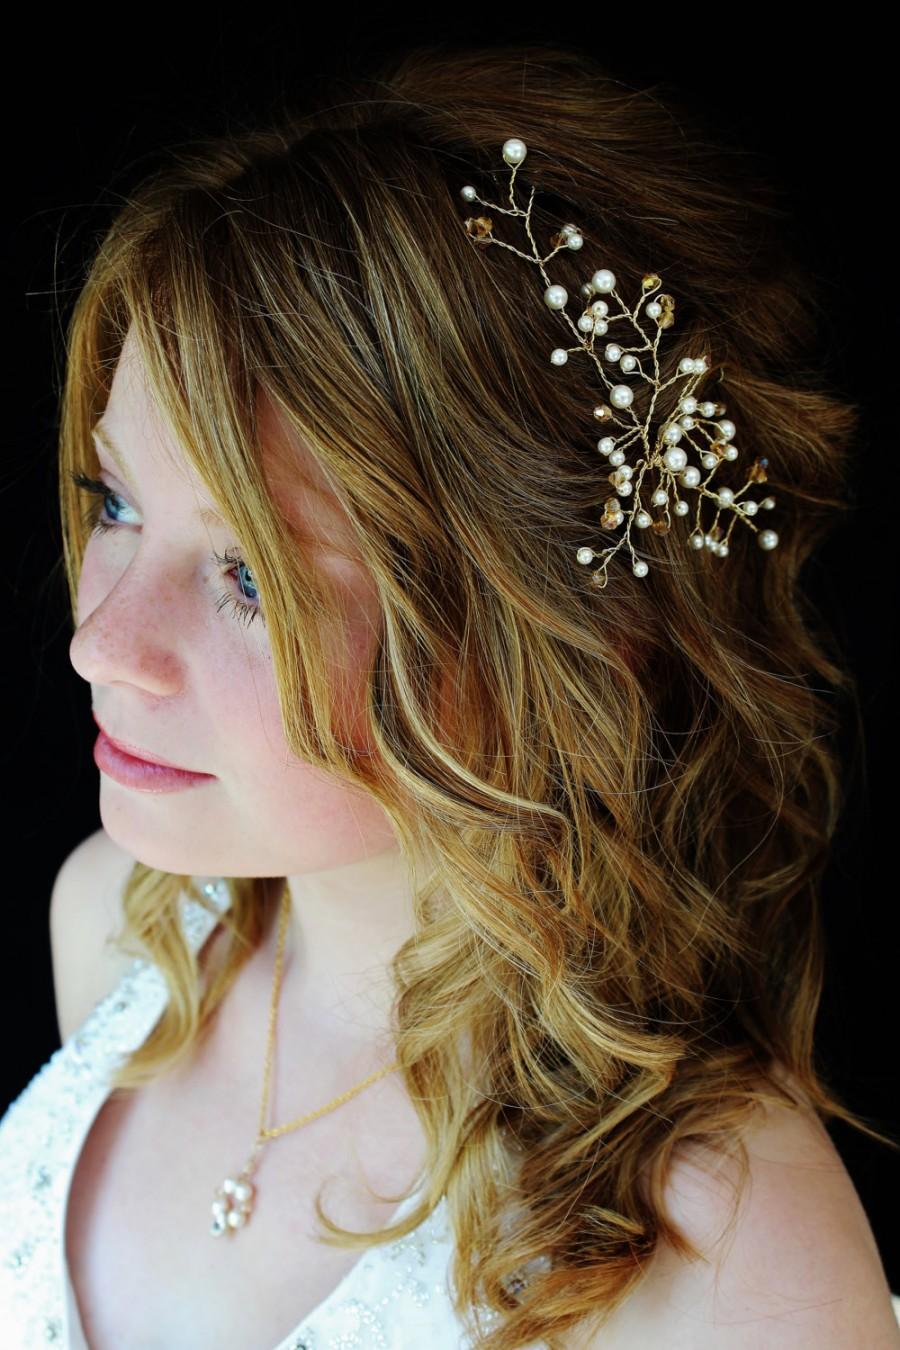 زفاف - Gold Hair Vine,Crystal Hair vine, Wedding Hair Accessories,Bridal Hair Accessories,Pearl Hair Vine,Handmade With Swarovski Crystals & Pearls